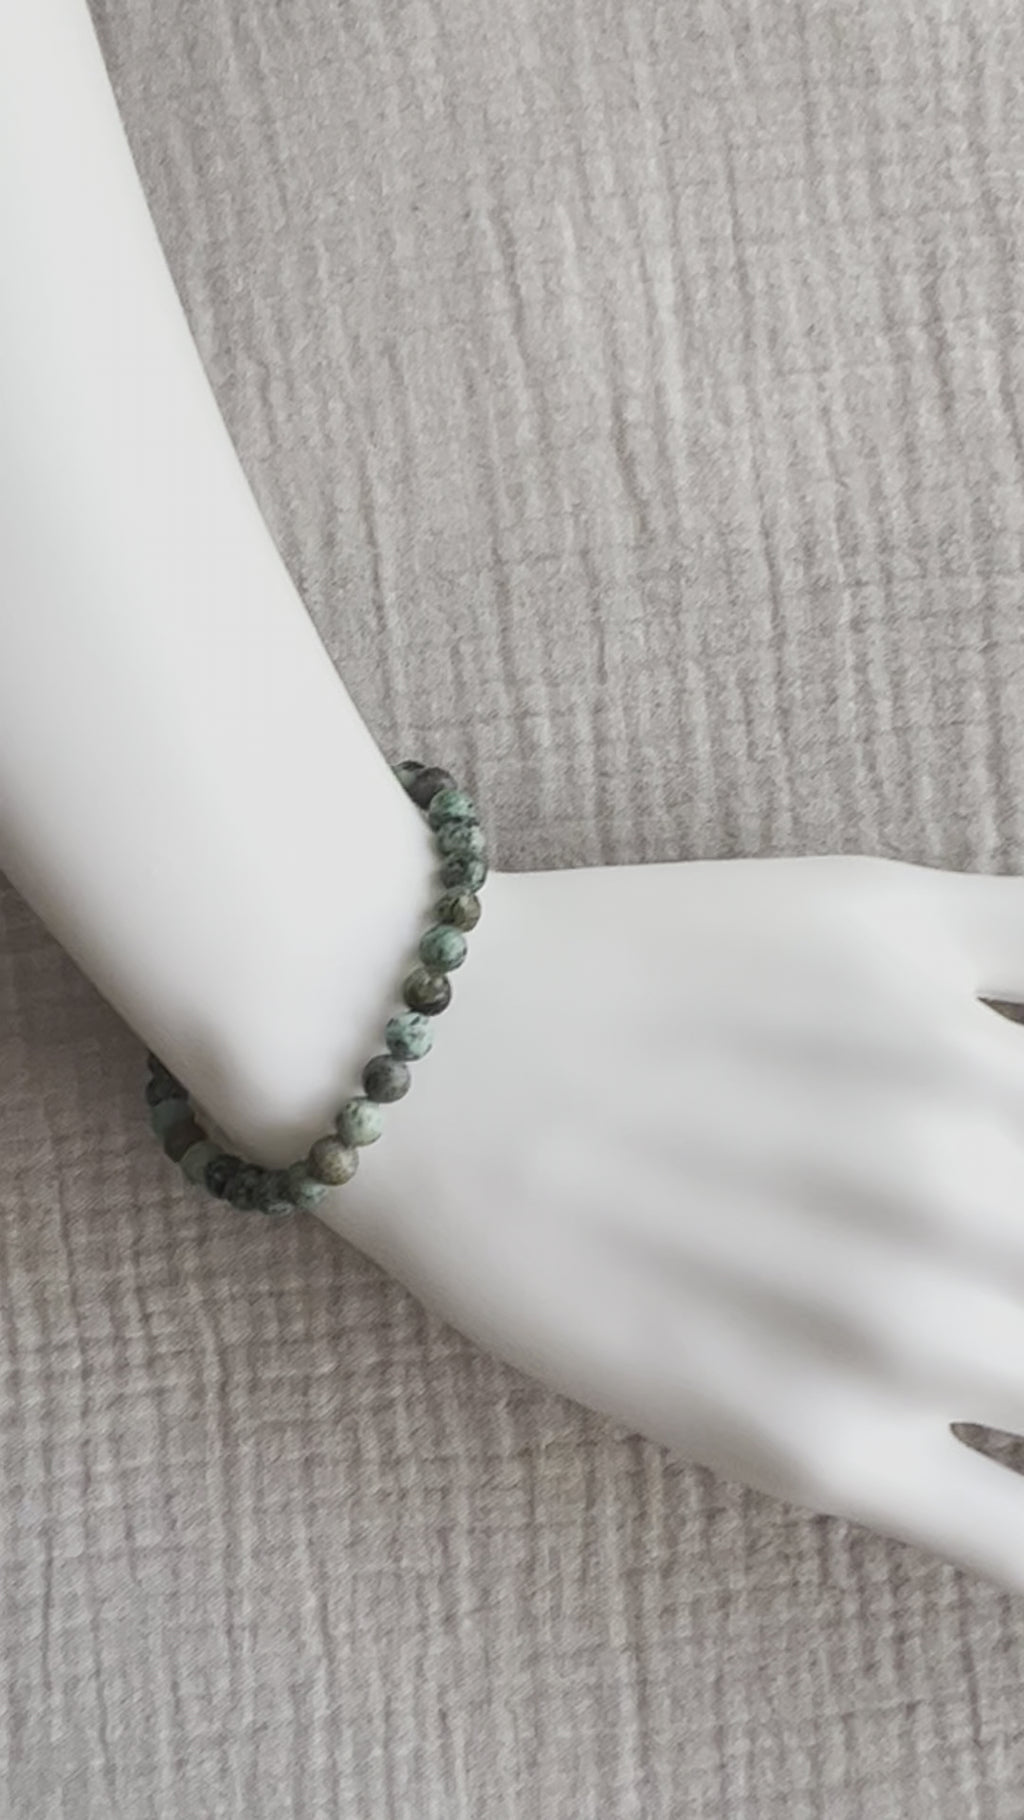 Turquoise Bracelet on wrist - video